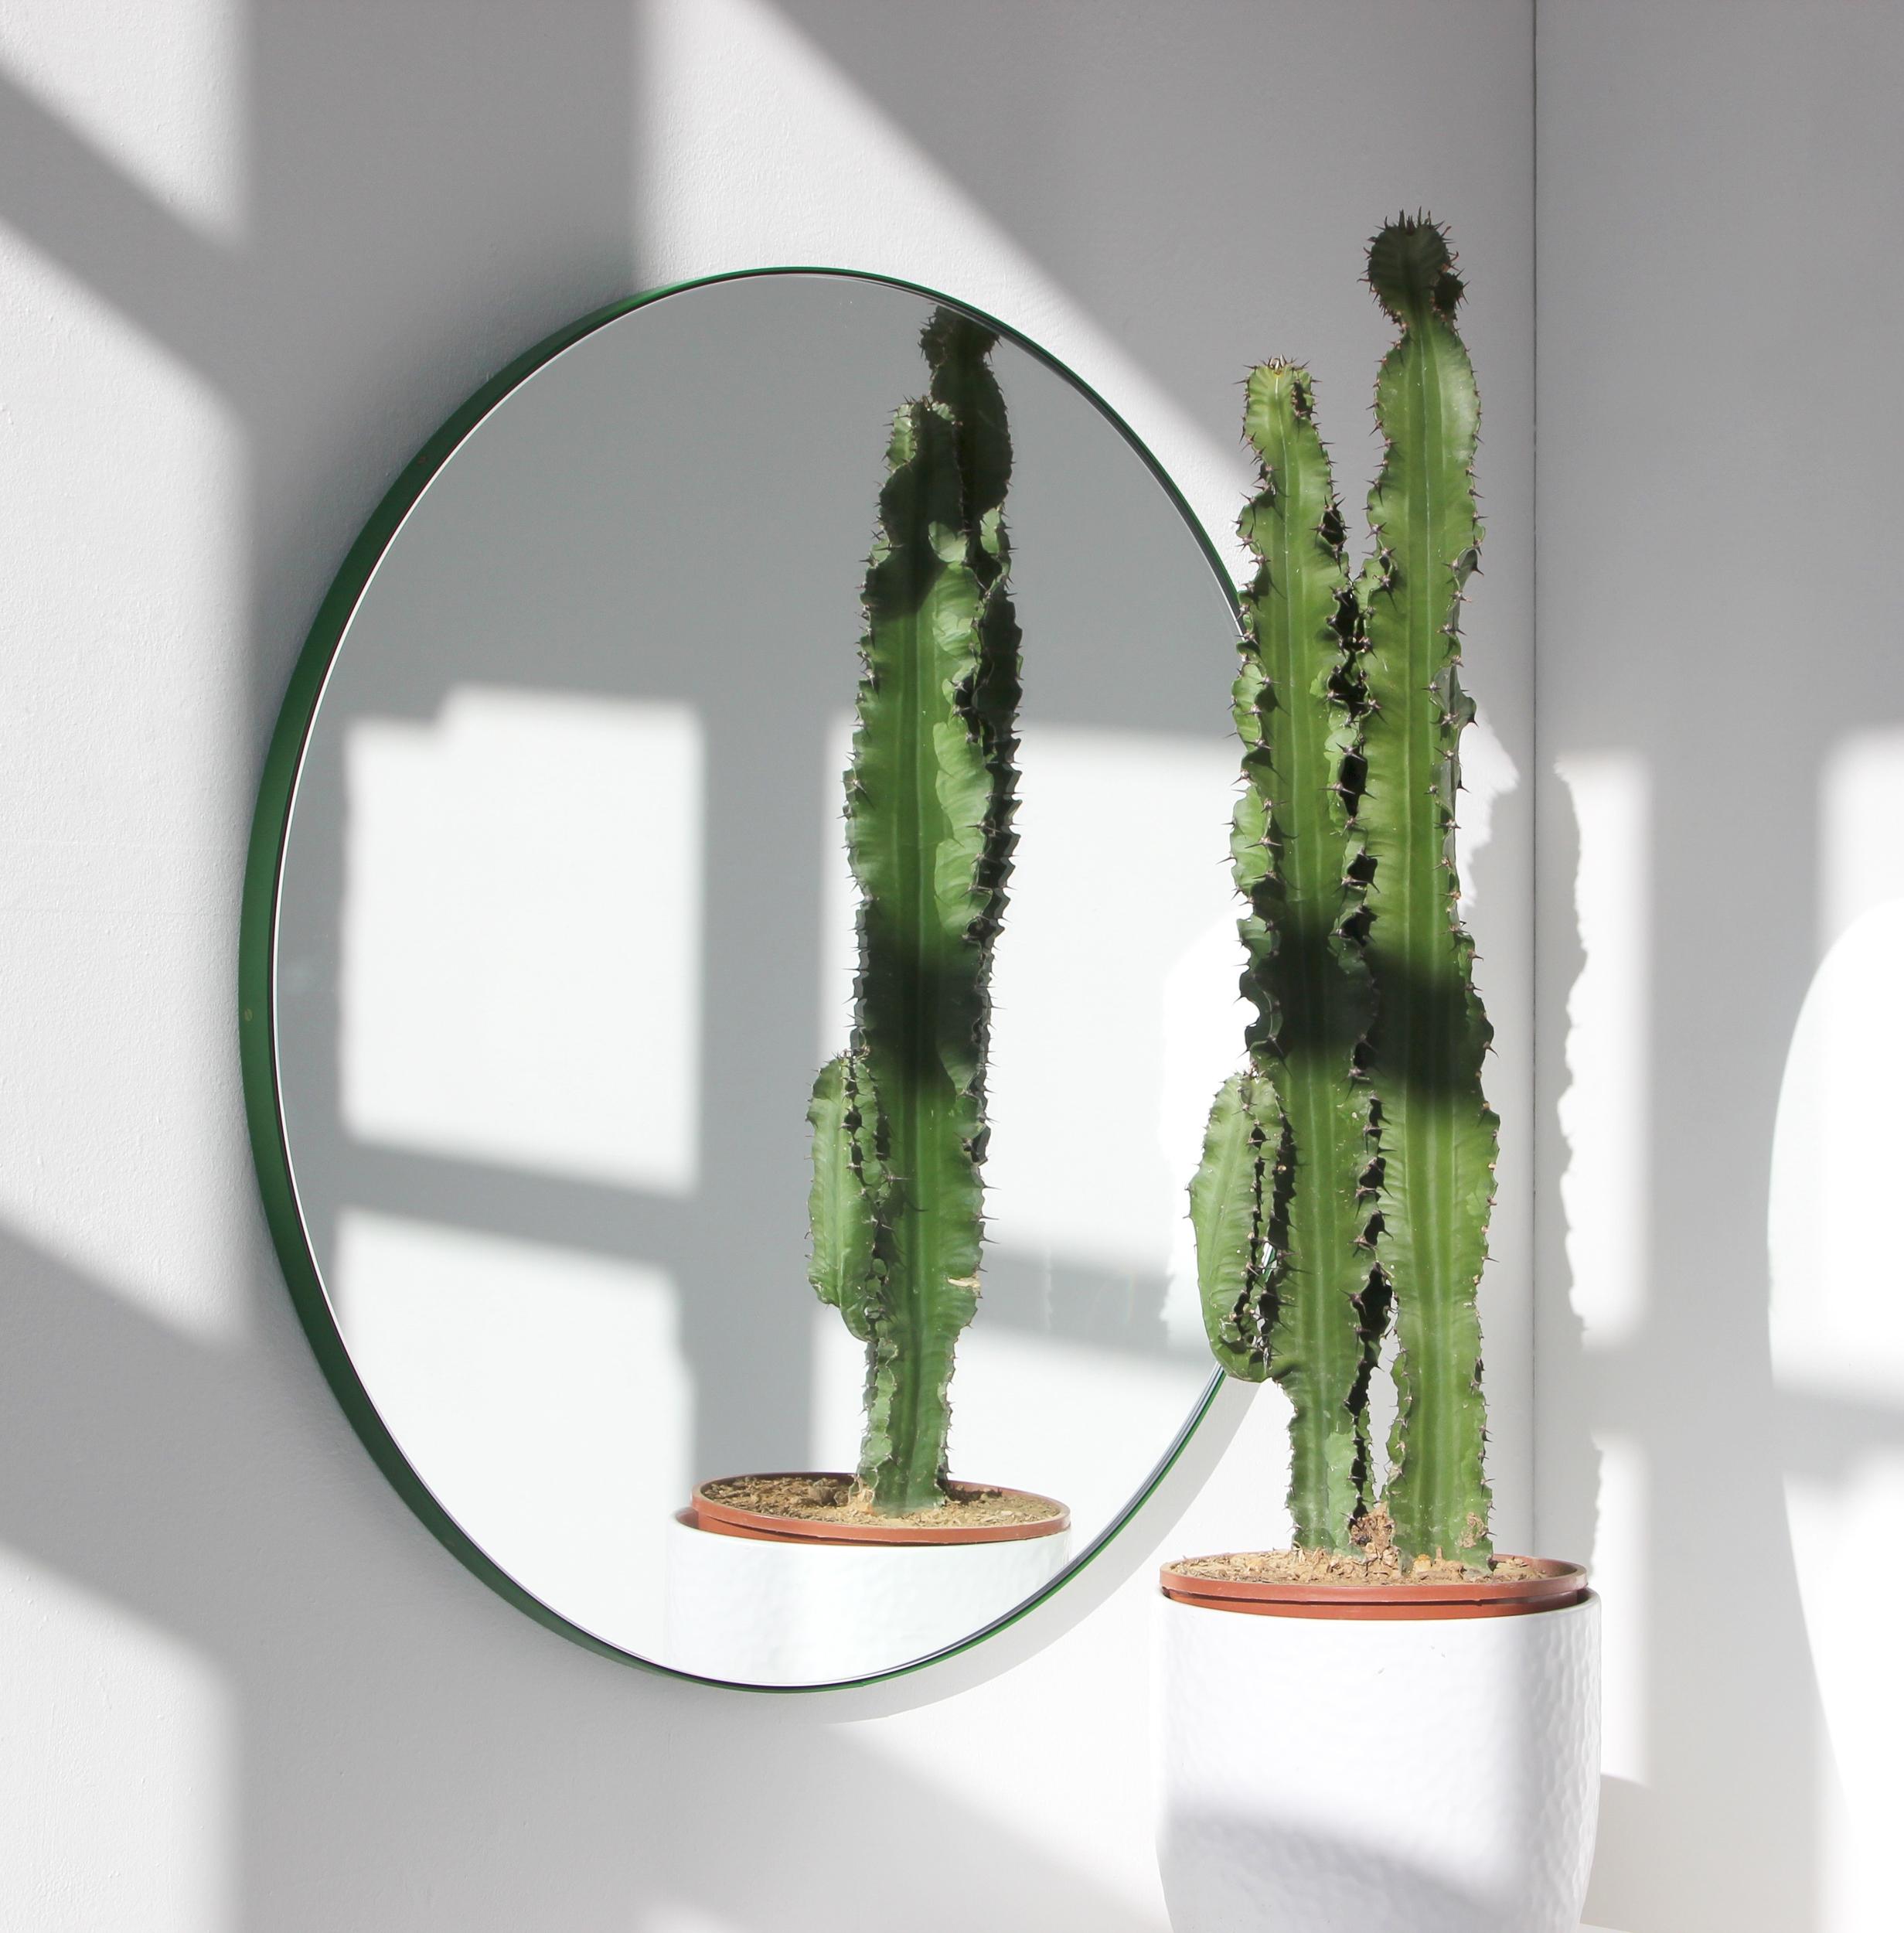 Miroir rond minimaliste avec un cadre vert vif en aluminium peint par poudrage. Conçu et fabriqué à la main à Londres, au Royaume-Uni.

Nos miroirs sont conçus avec un système intégré de tasseaux français (lattes fendues) qui garantit que le miroir